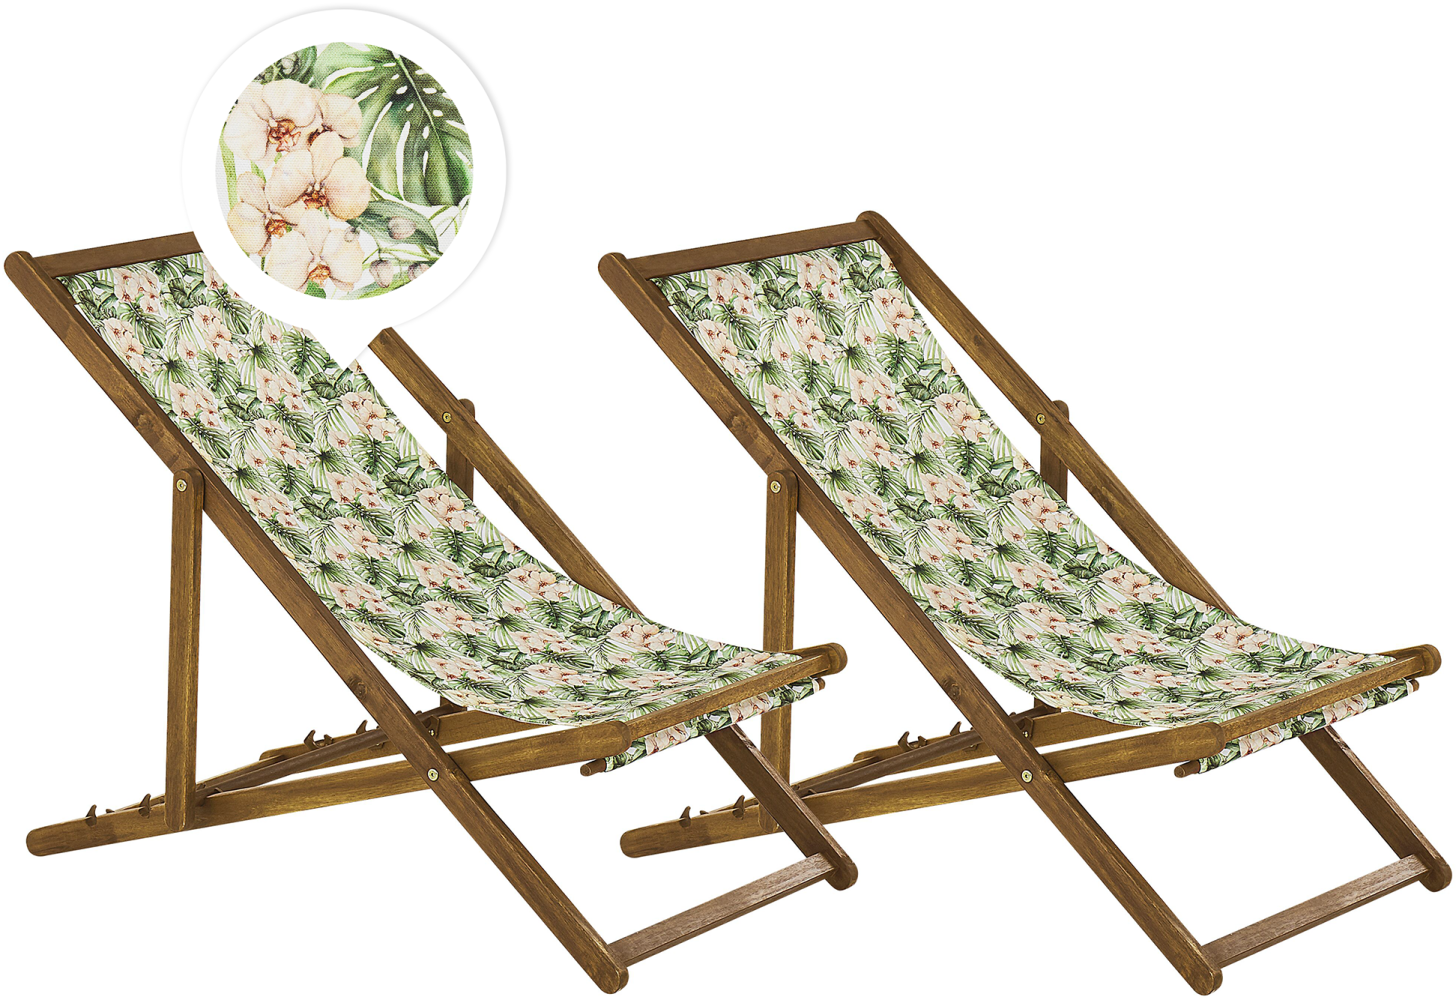 Liegestuhl Akazienholz hellbraun Textil weiß grün Blumenmuster 2er Set ANZIO Bild 1